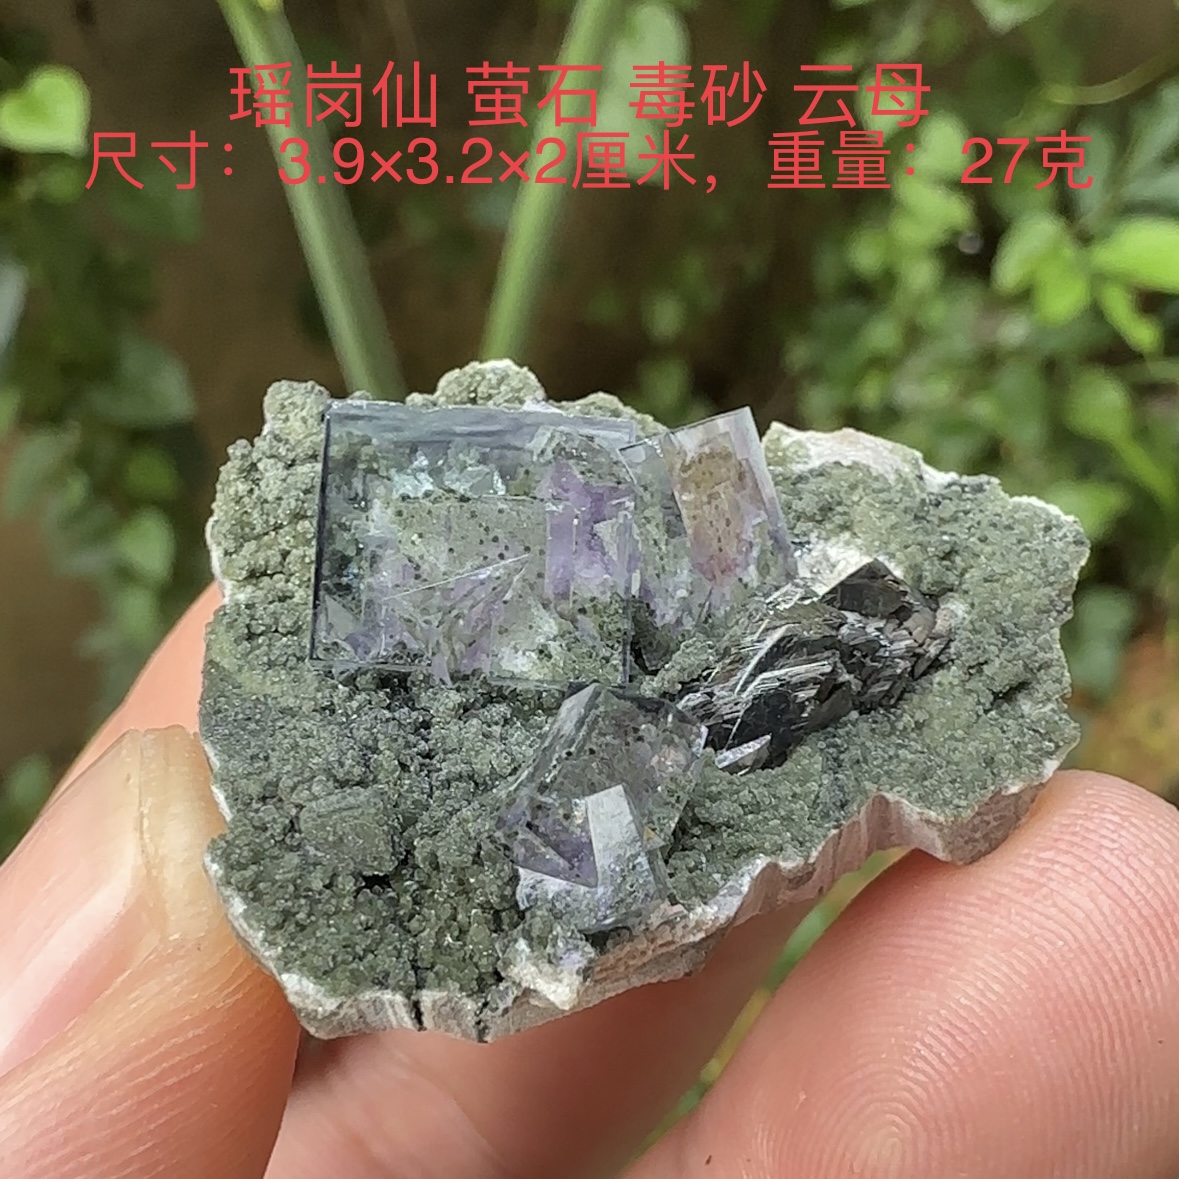 瑶岗仙紫萤石毒砂云母 天然矿物晶体标本矿石原石收藏石头摆件d17